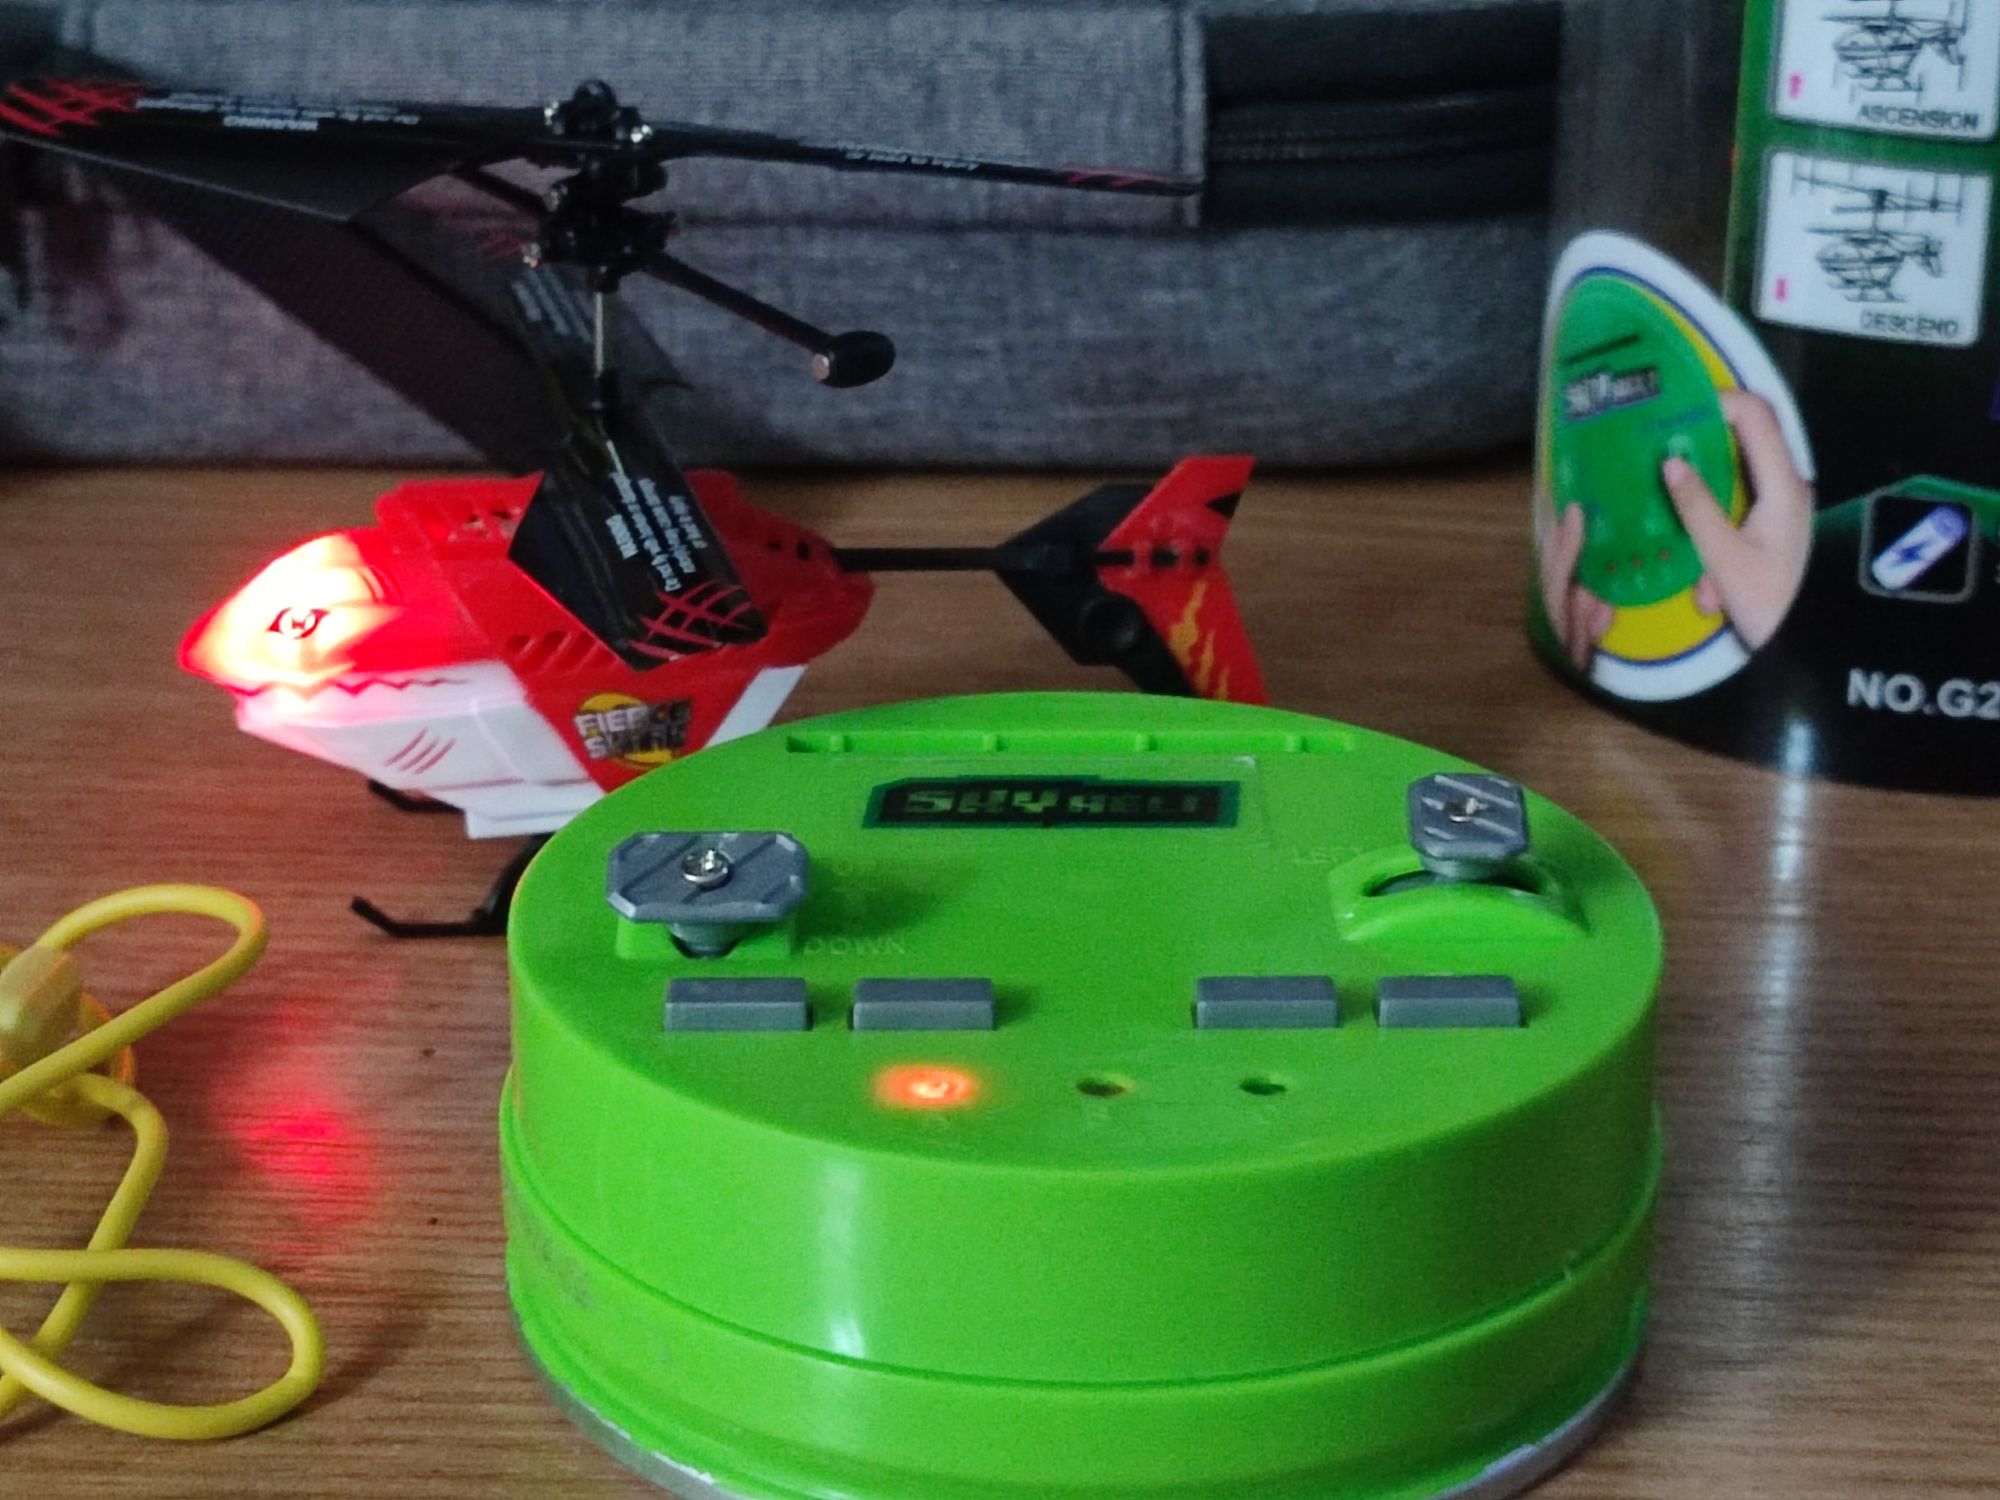 Mini dronă cu cameră + elicopter miniatură cu telecomandă